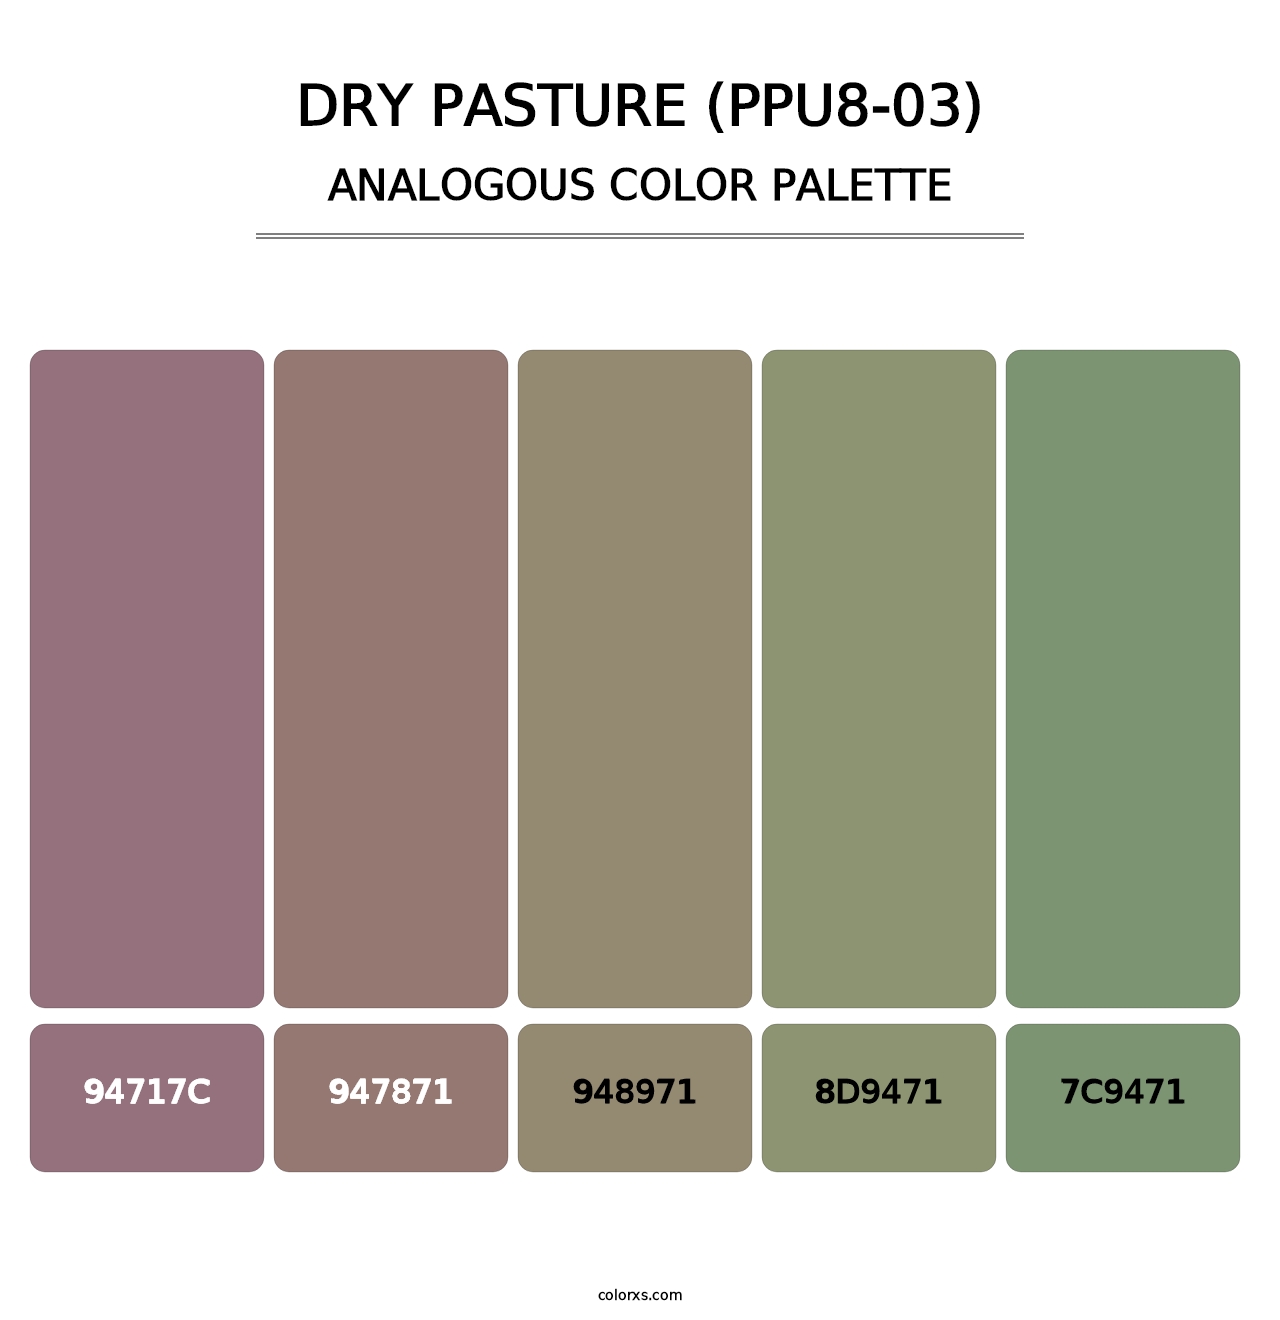 Dry Pasture (PPU8-03) - Analogous Color Palette